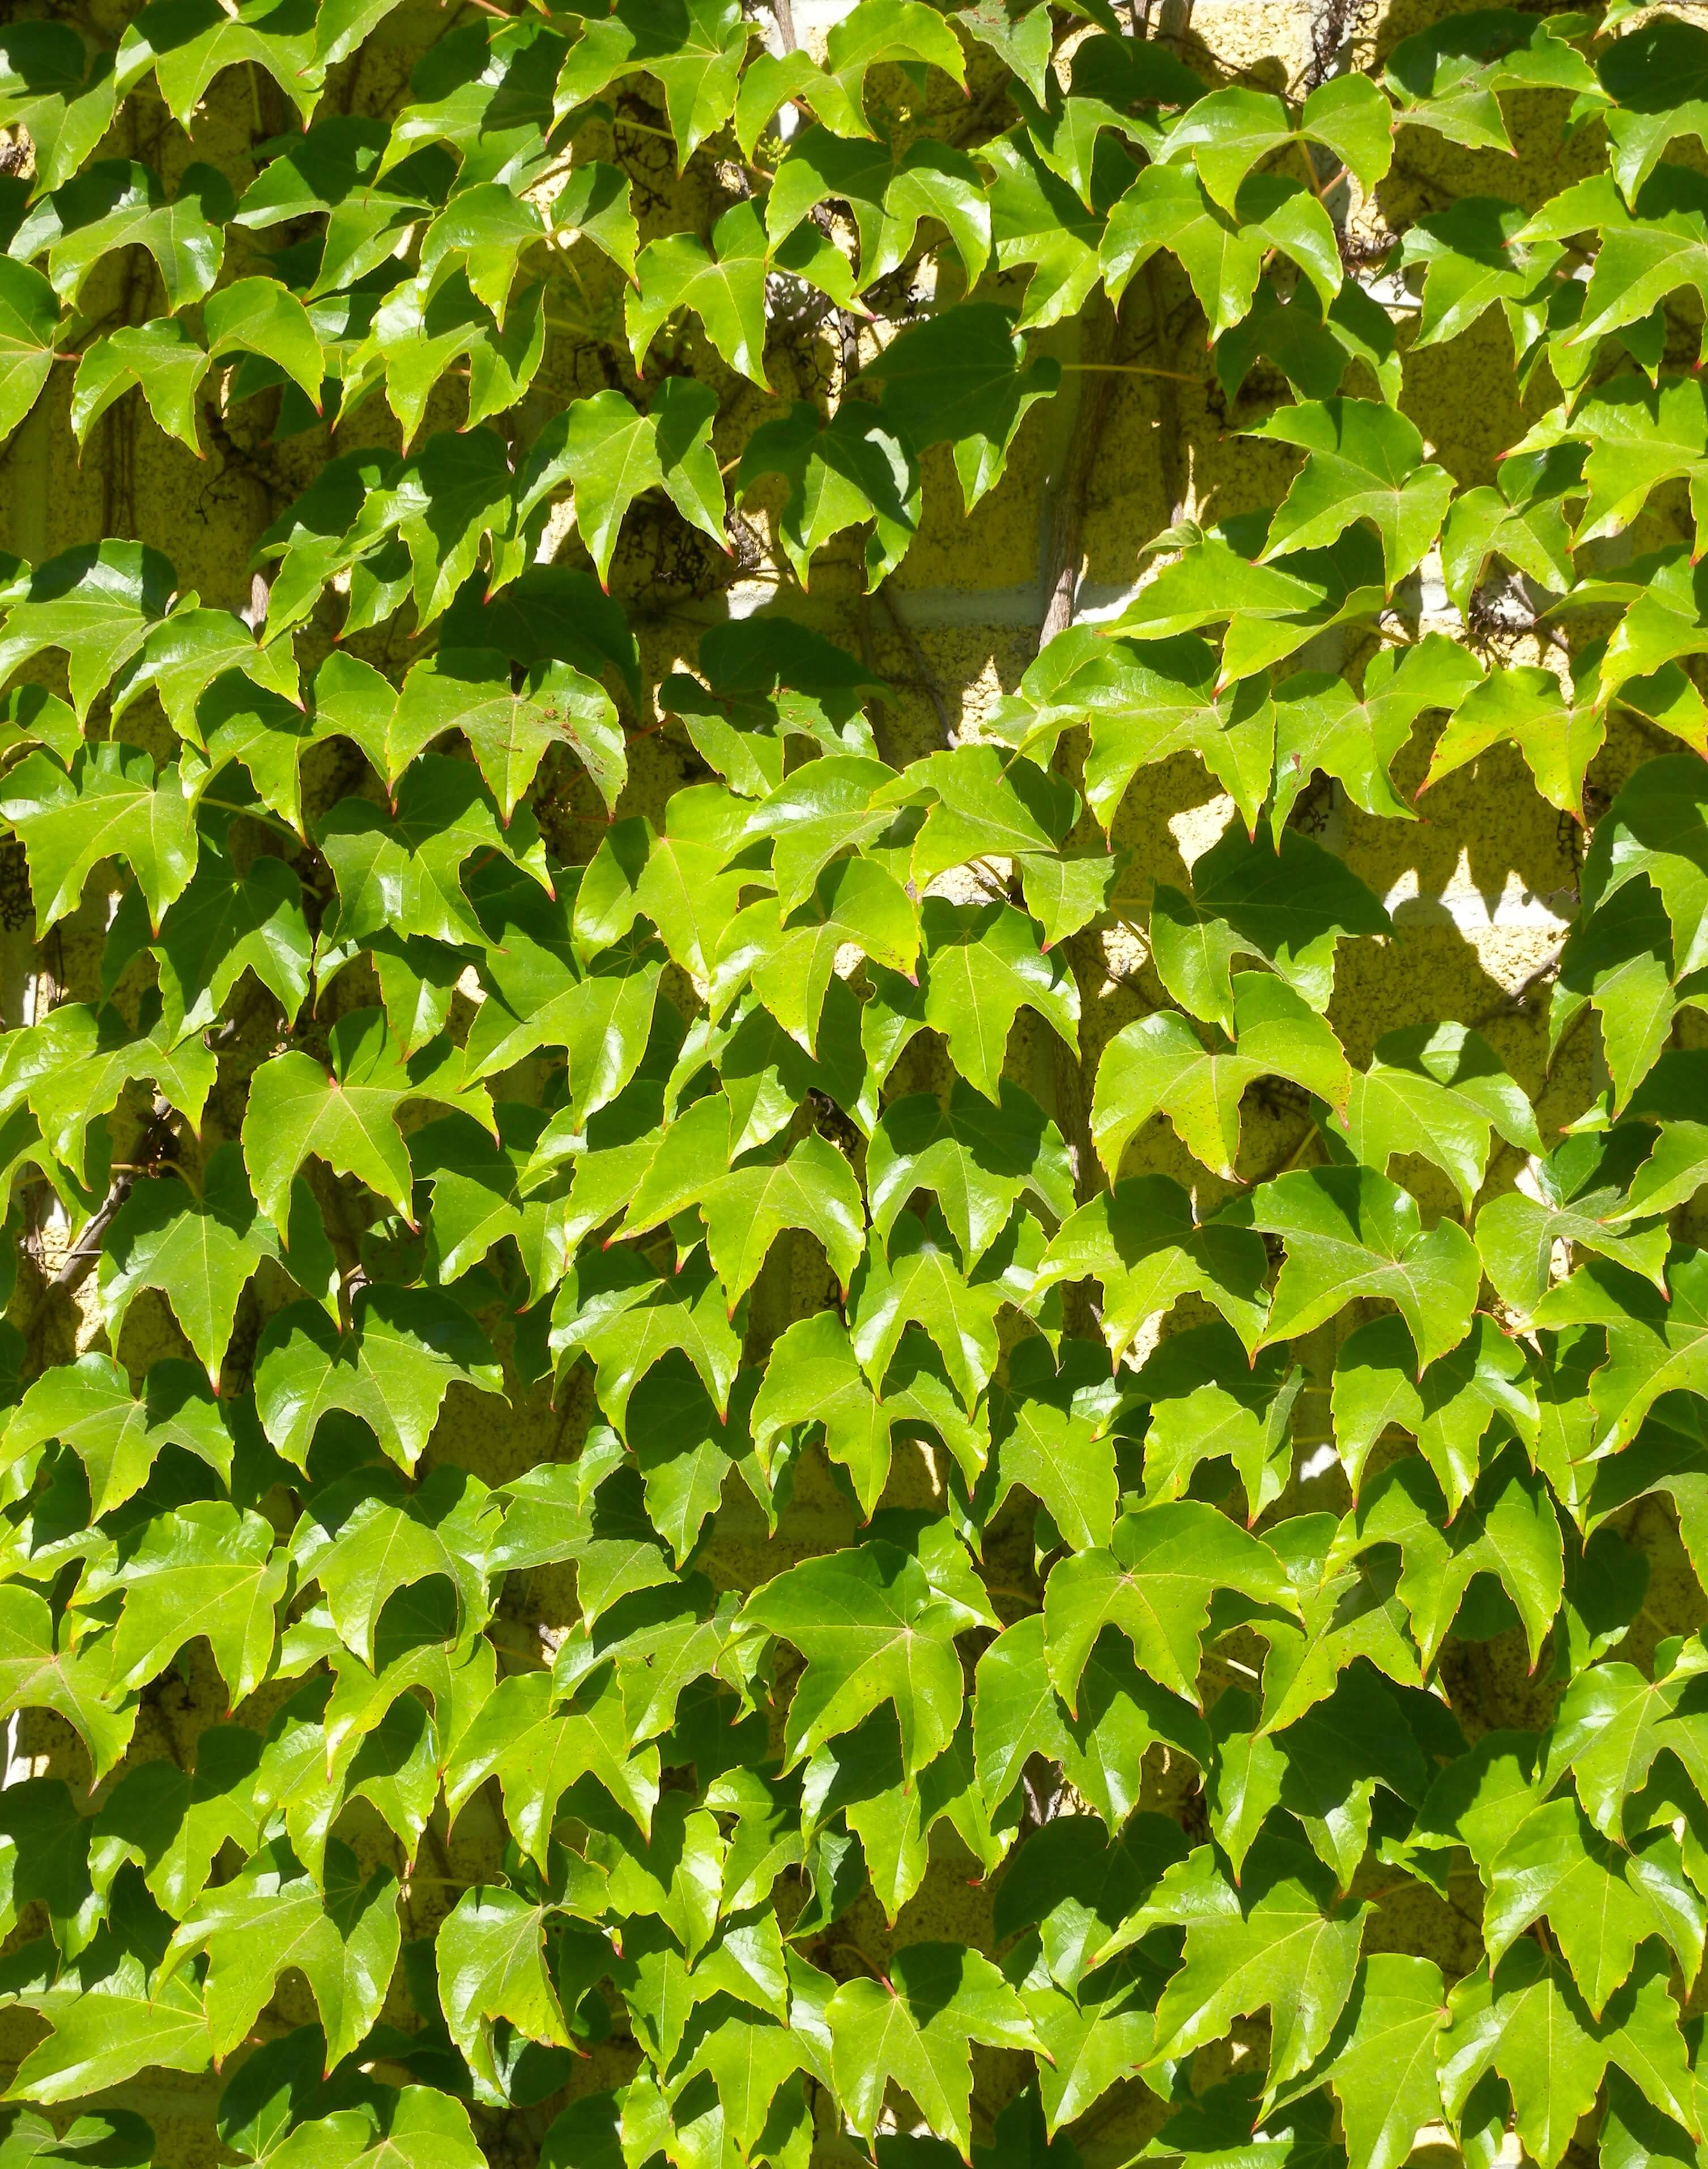 Parthenocissus tricuspidata 'Fenway park' 286